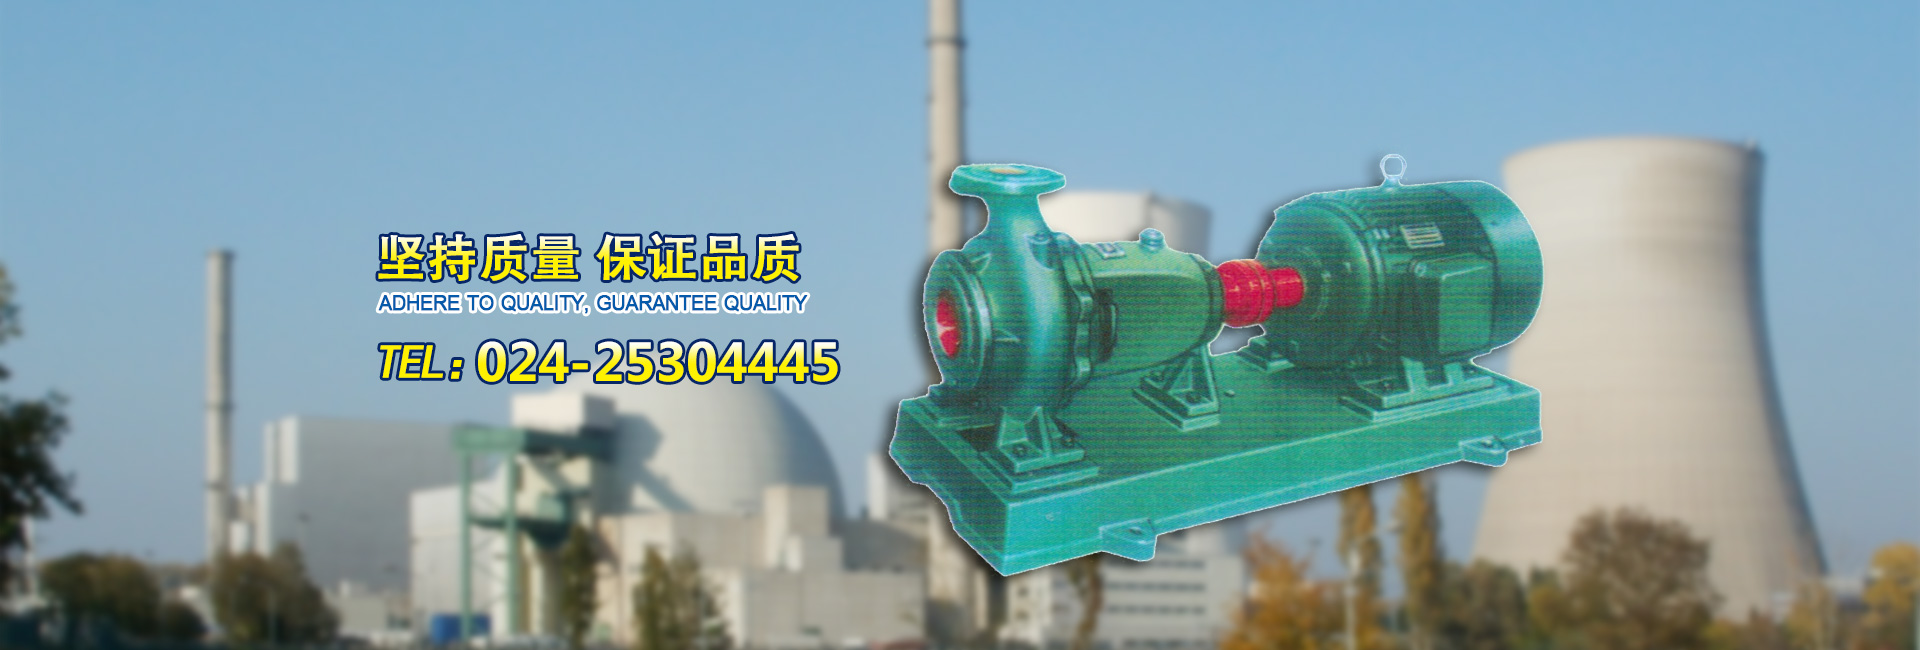 電站(zhan)泵